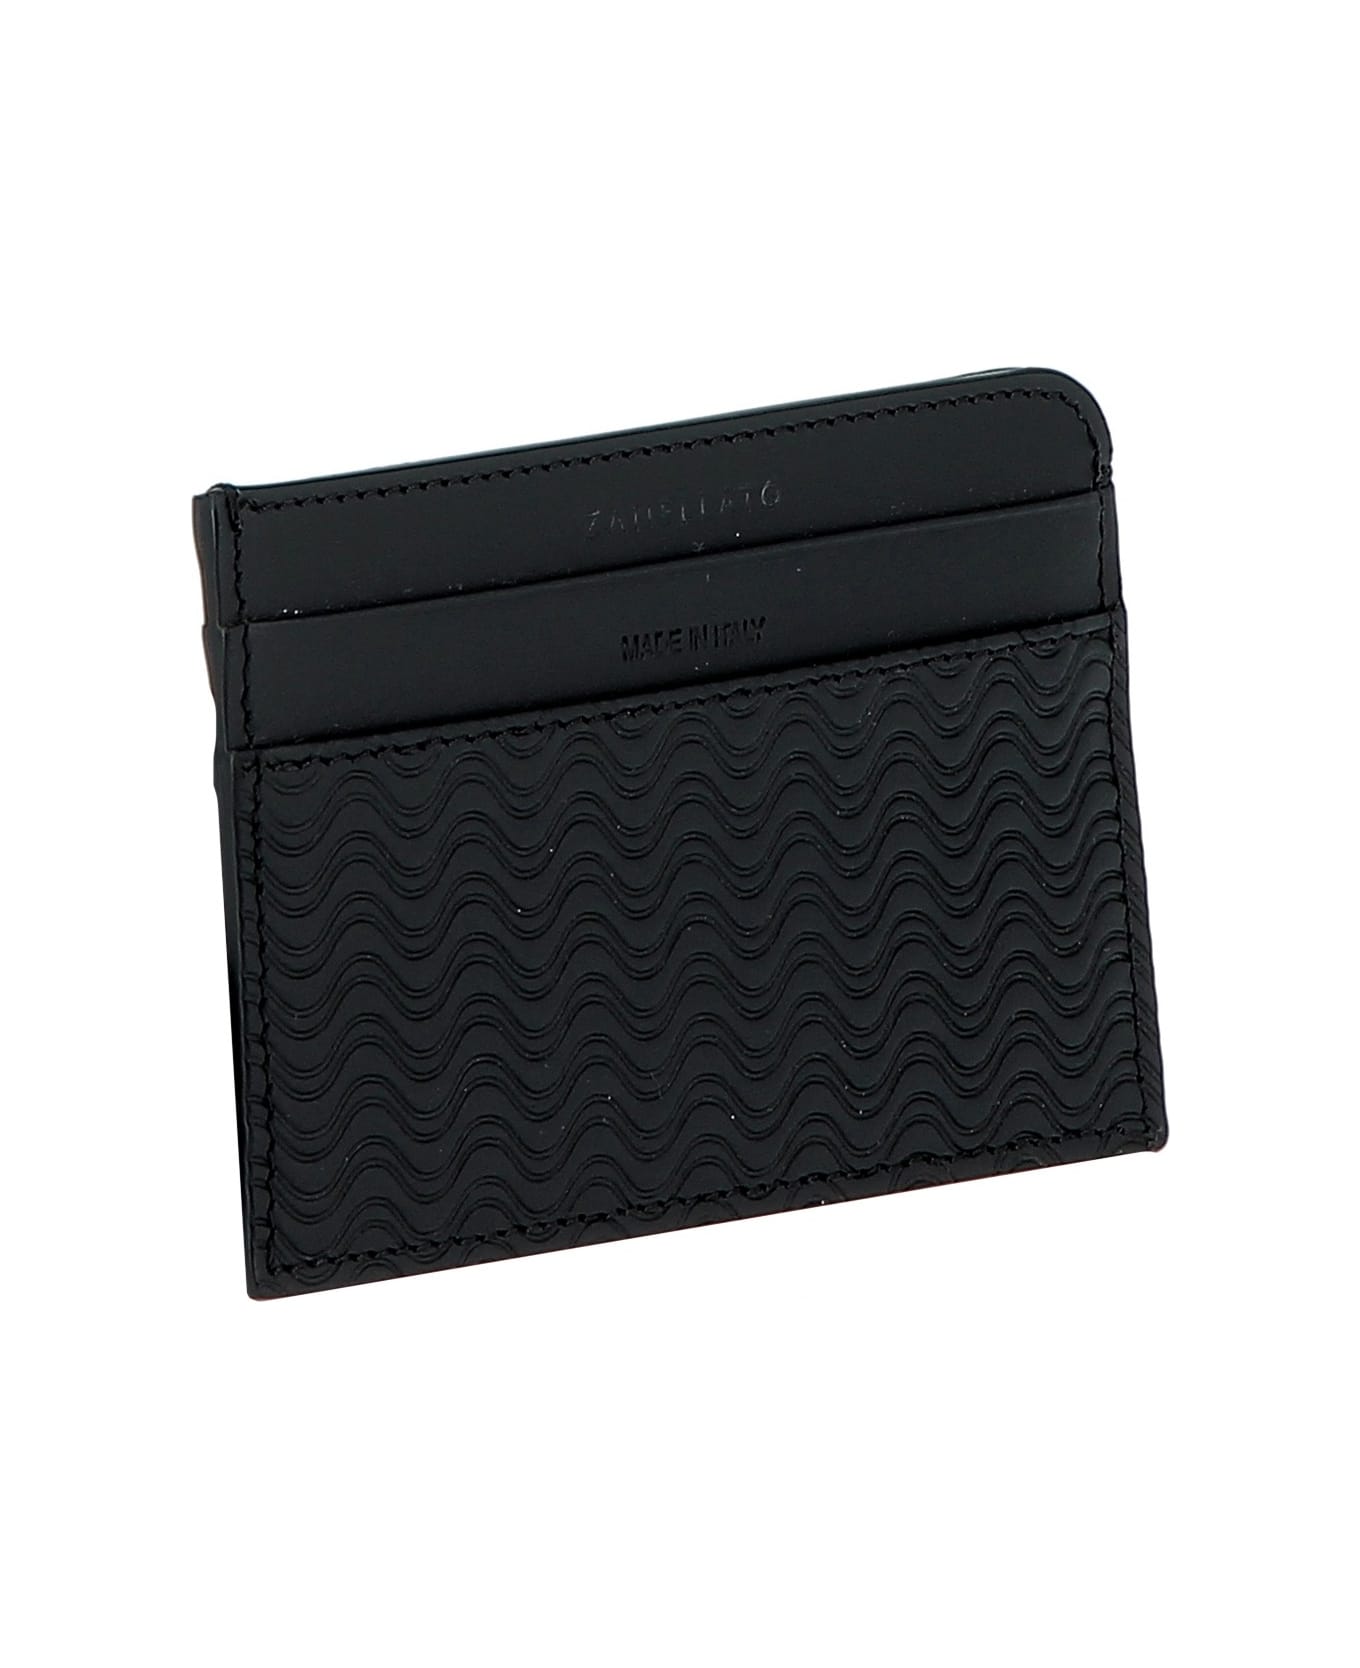 Zanellato Black Leather Wallet